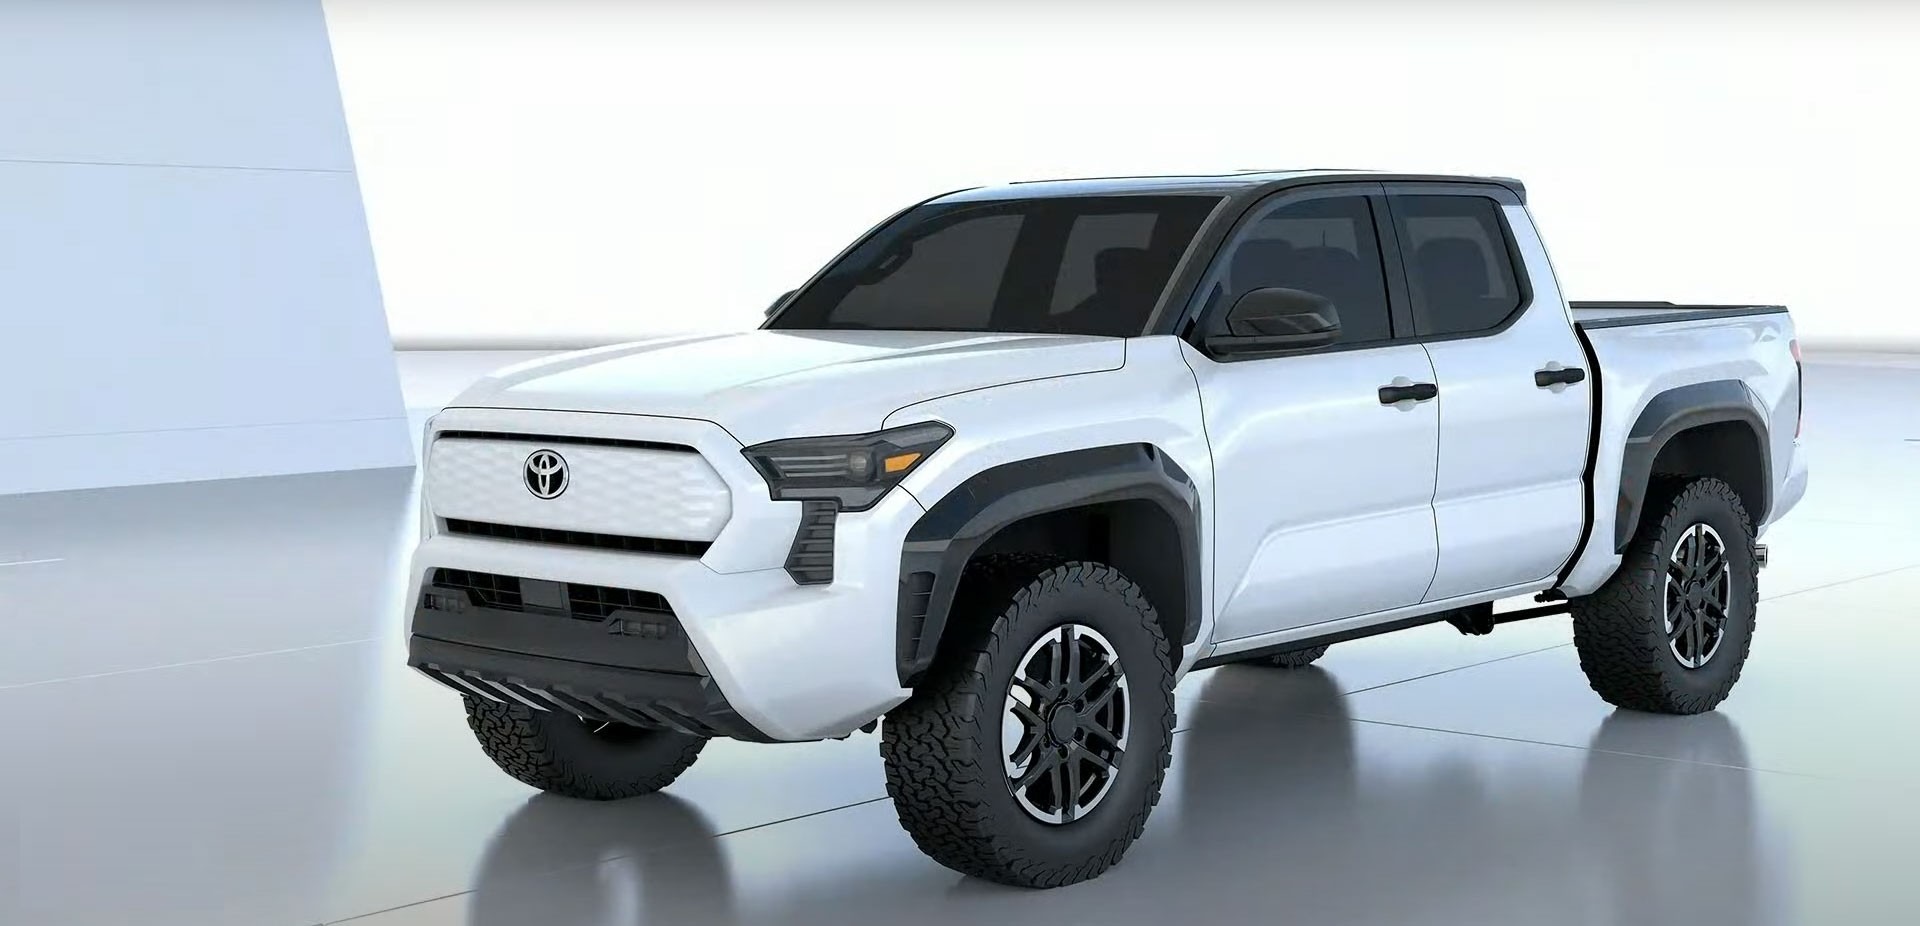 Toyota Tacoma lộ thiết kế thế hệ mới, có thể là bản xem trước cho Hilux - ảnh 1